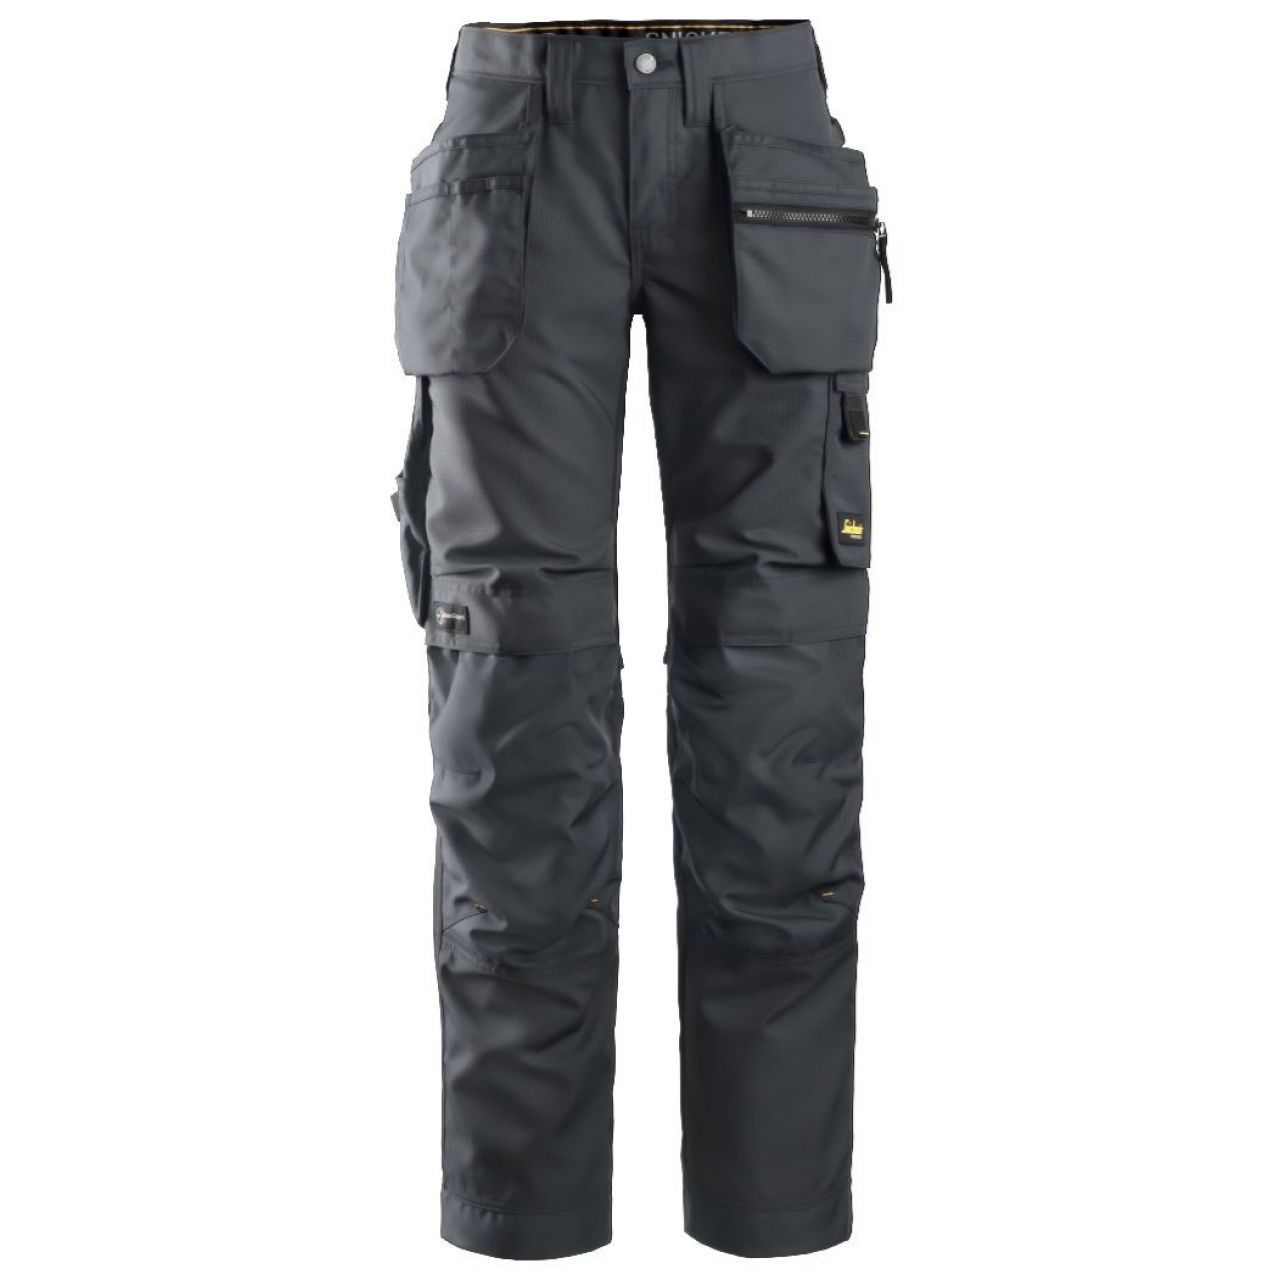 Pantalon de mujer AllroundWork+ con bolsillos flotantes gris acero-negro talla 050